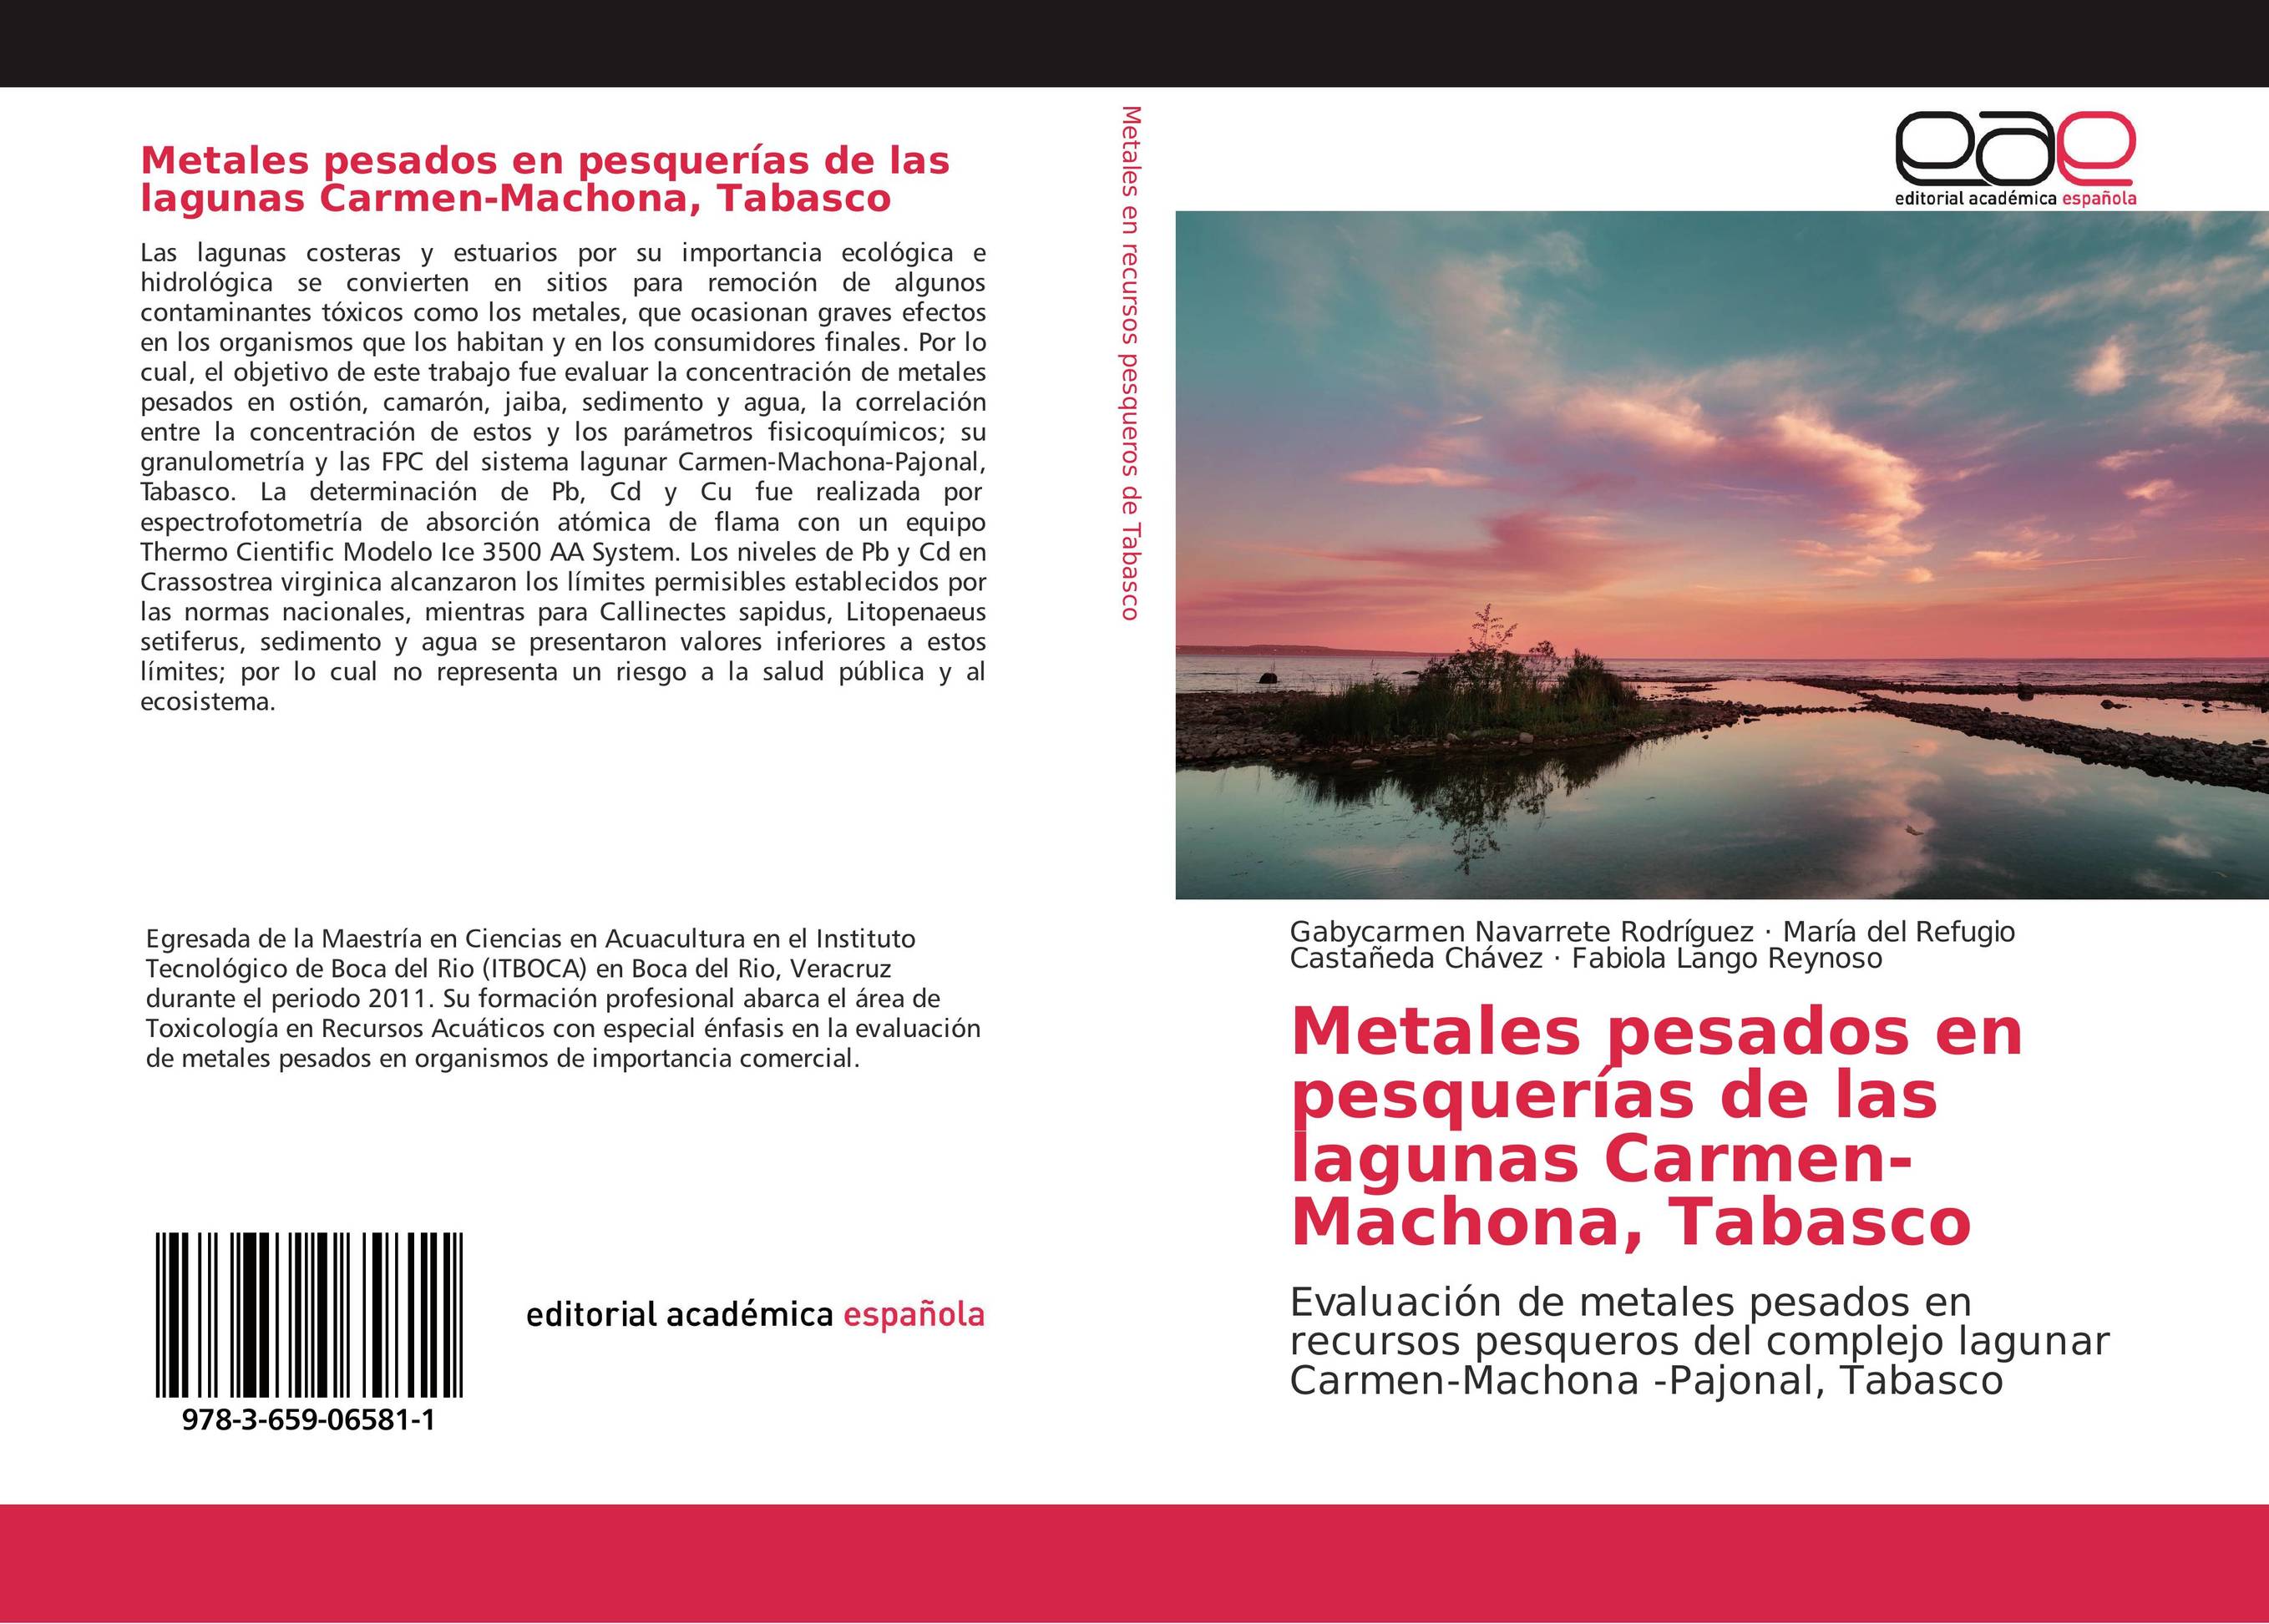 Metales pesados en pesquerías de las lagunas Carmen-Machona, Tabasco